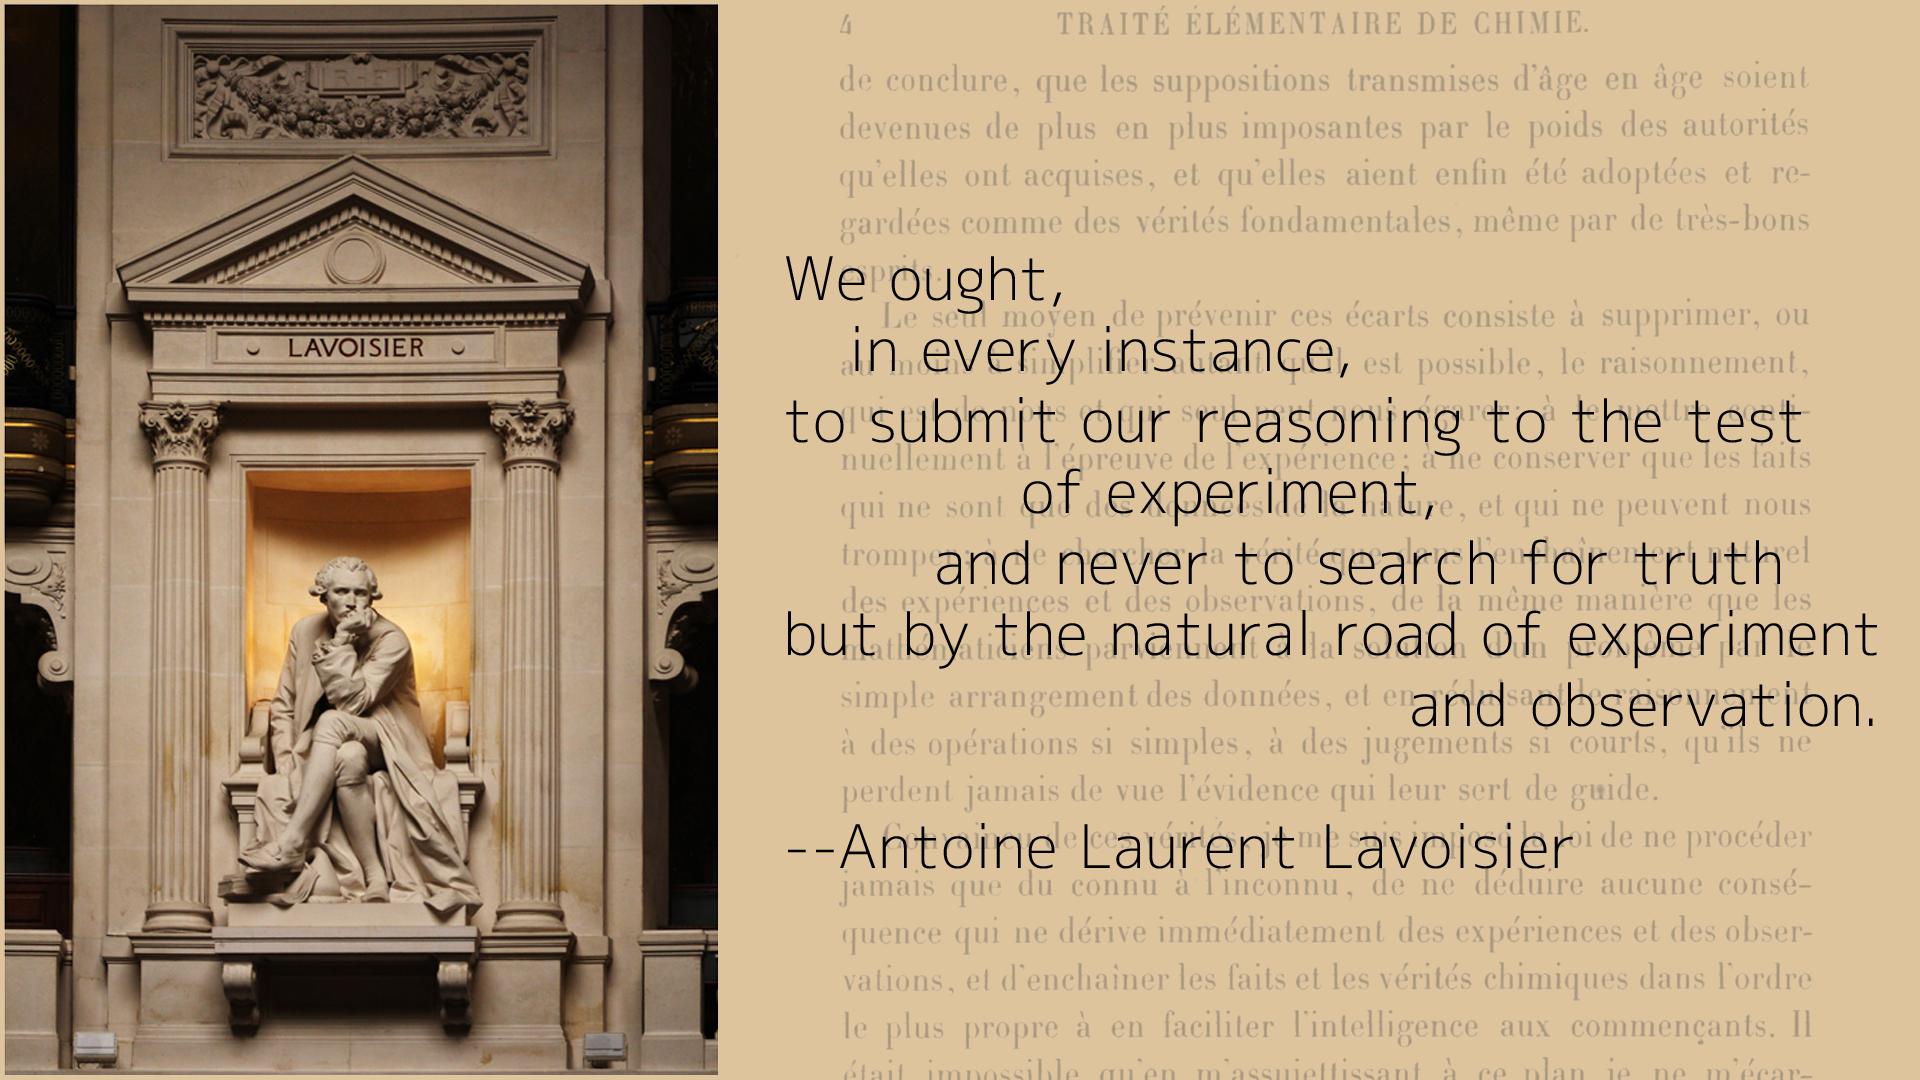 Antoine Lavoisier's quote